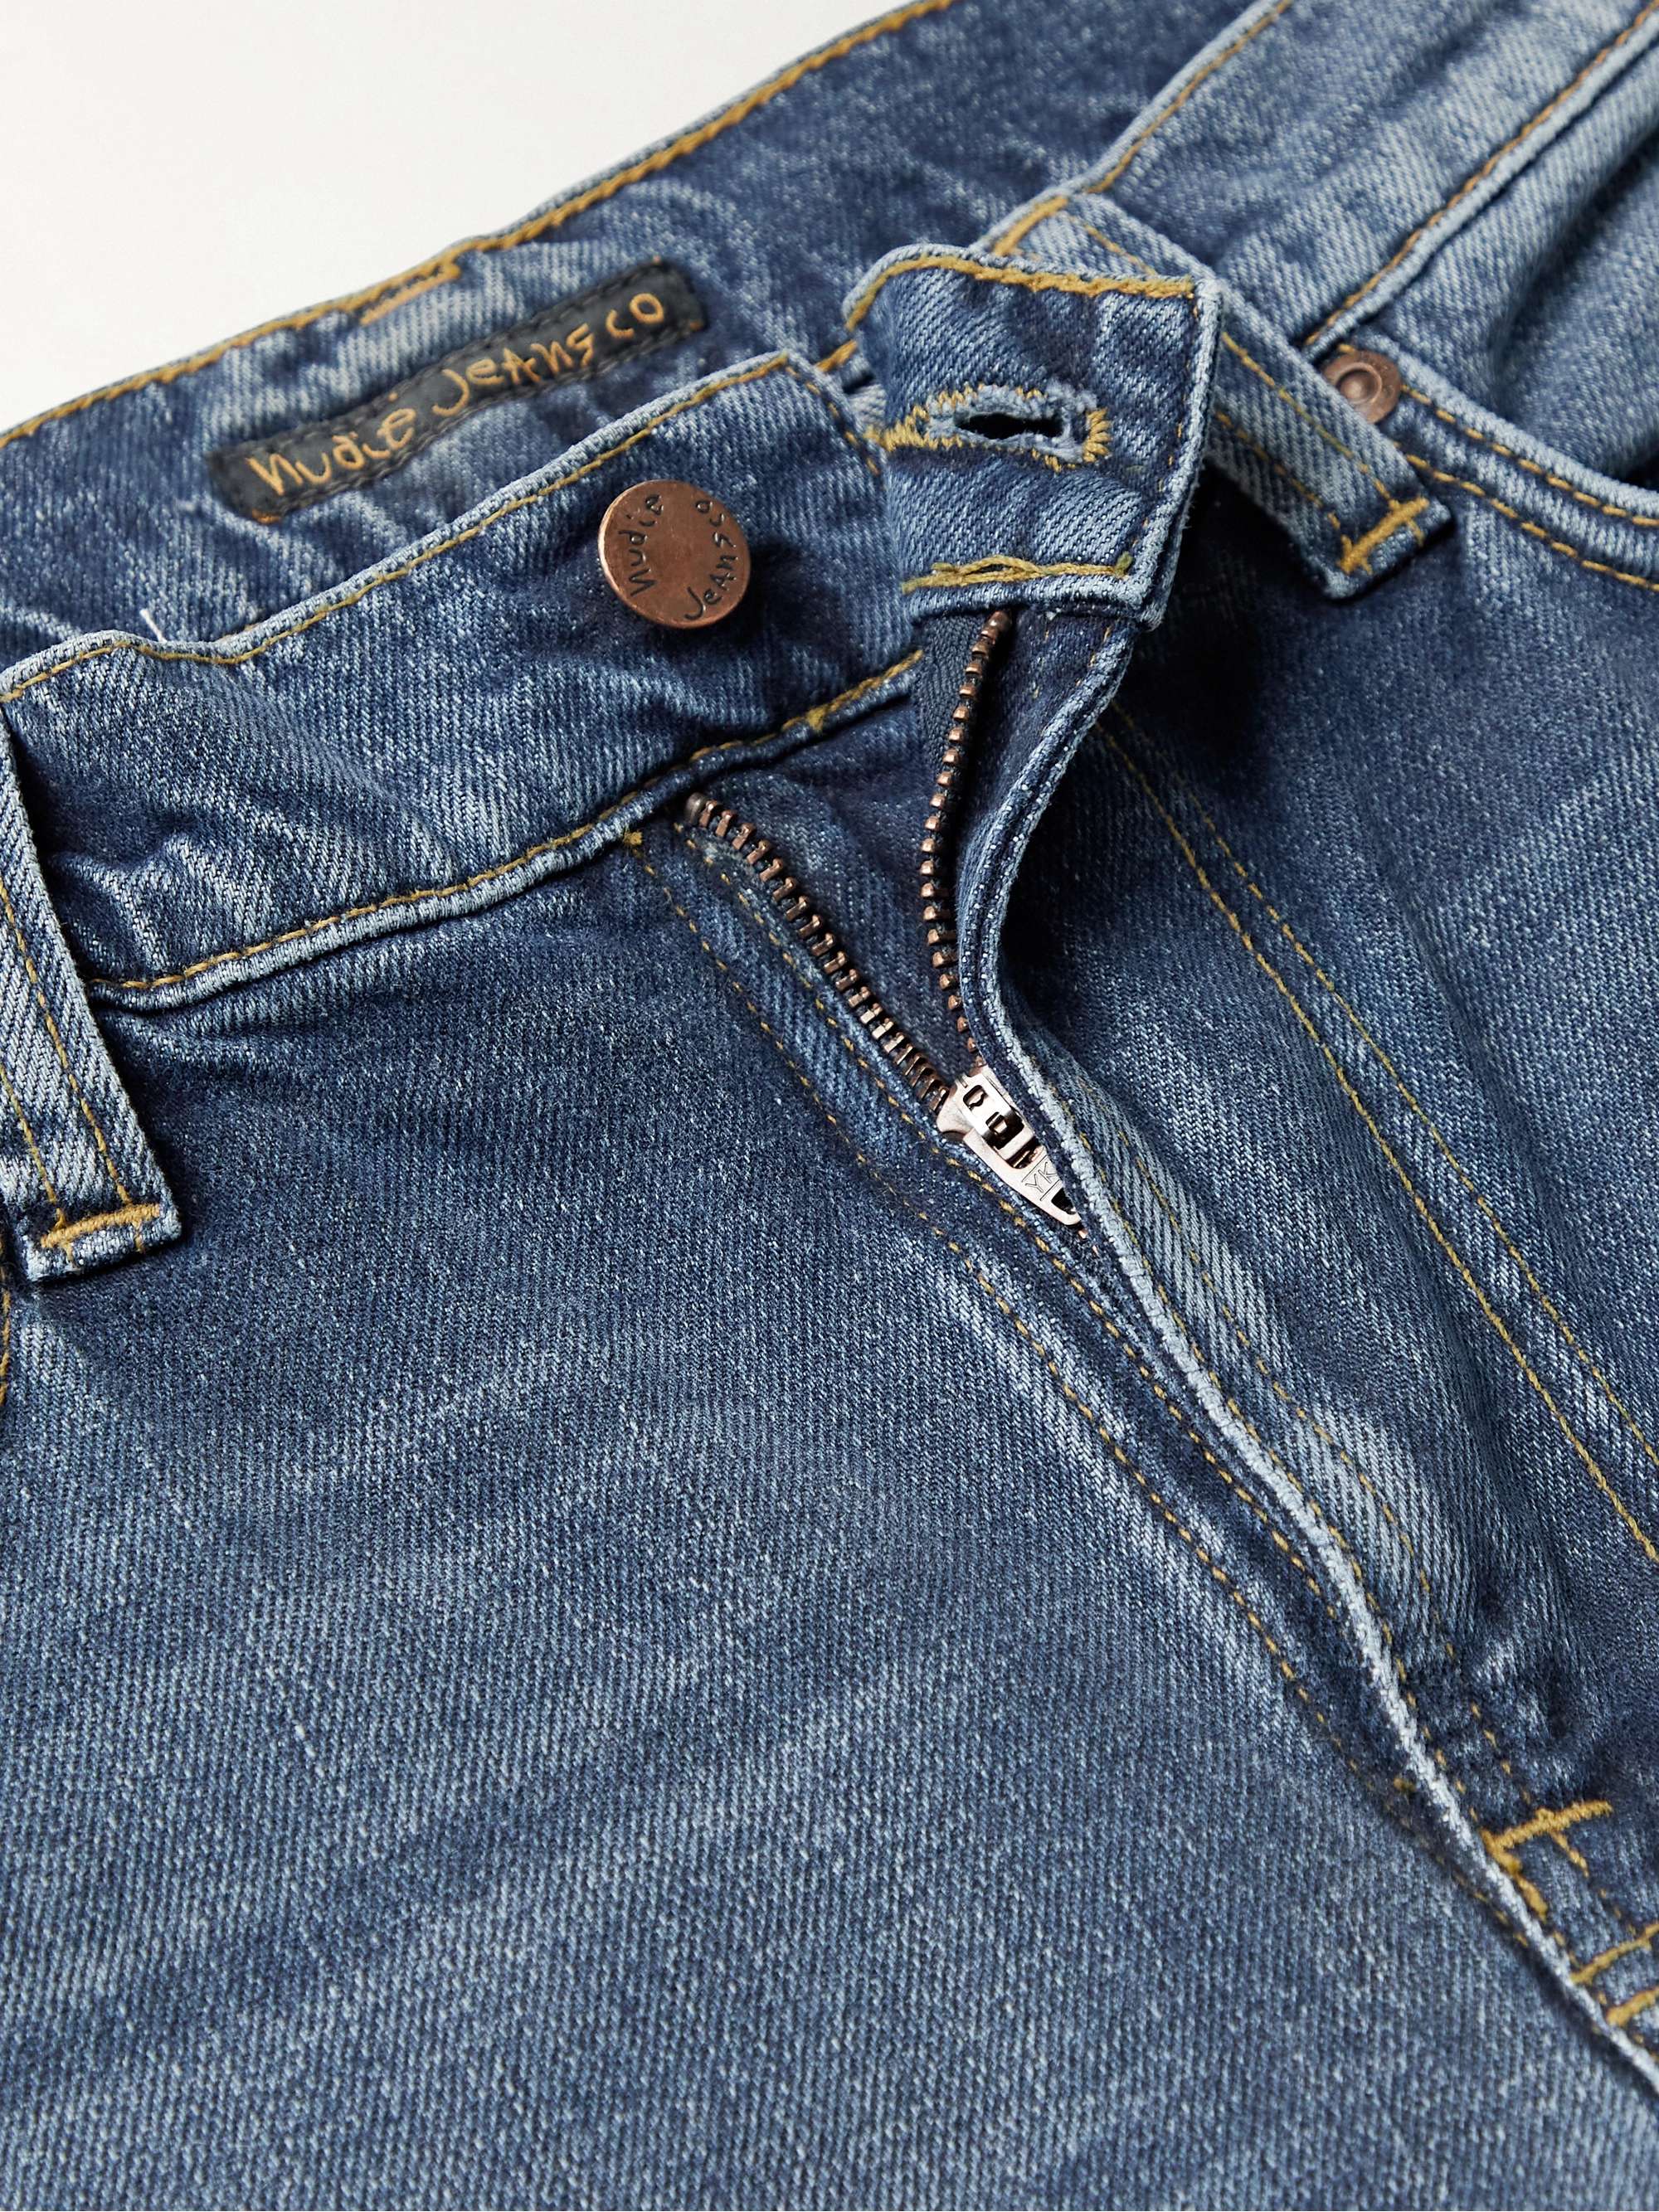 NUDIE JEANS Lean Dean Slim-Fit Organic Jeans